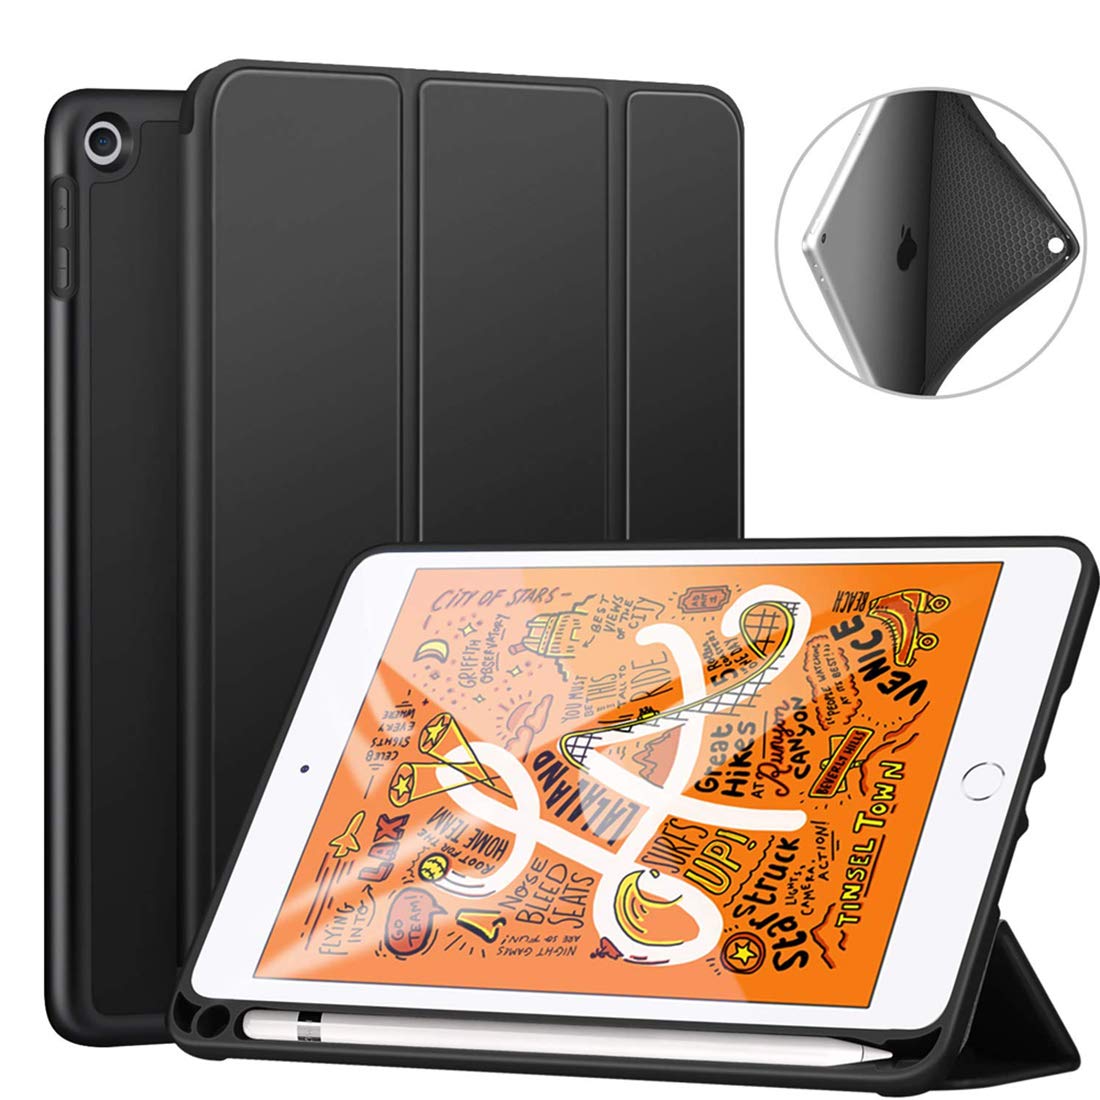 最新iPad Pro 11インチ 第3世代」アップルペンシルを保護・収納できる 